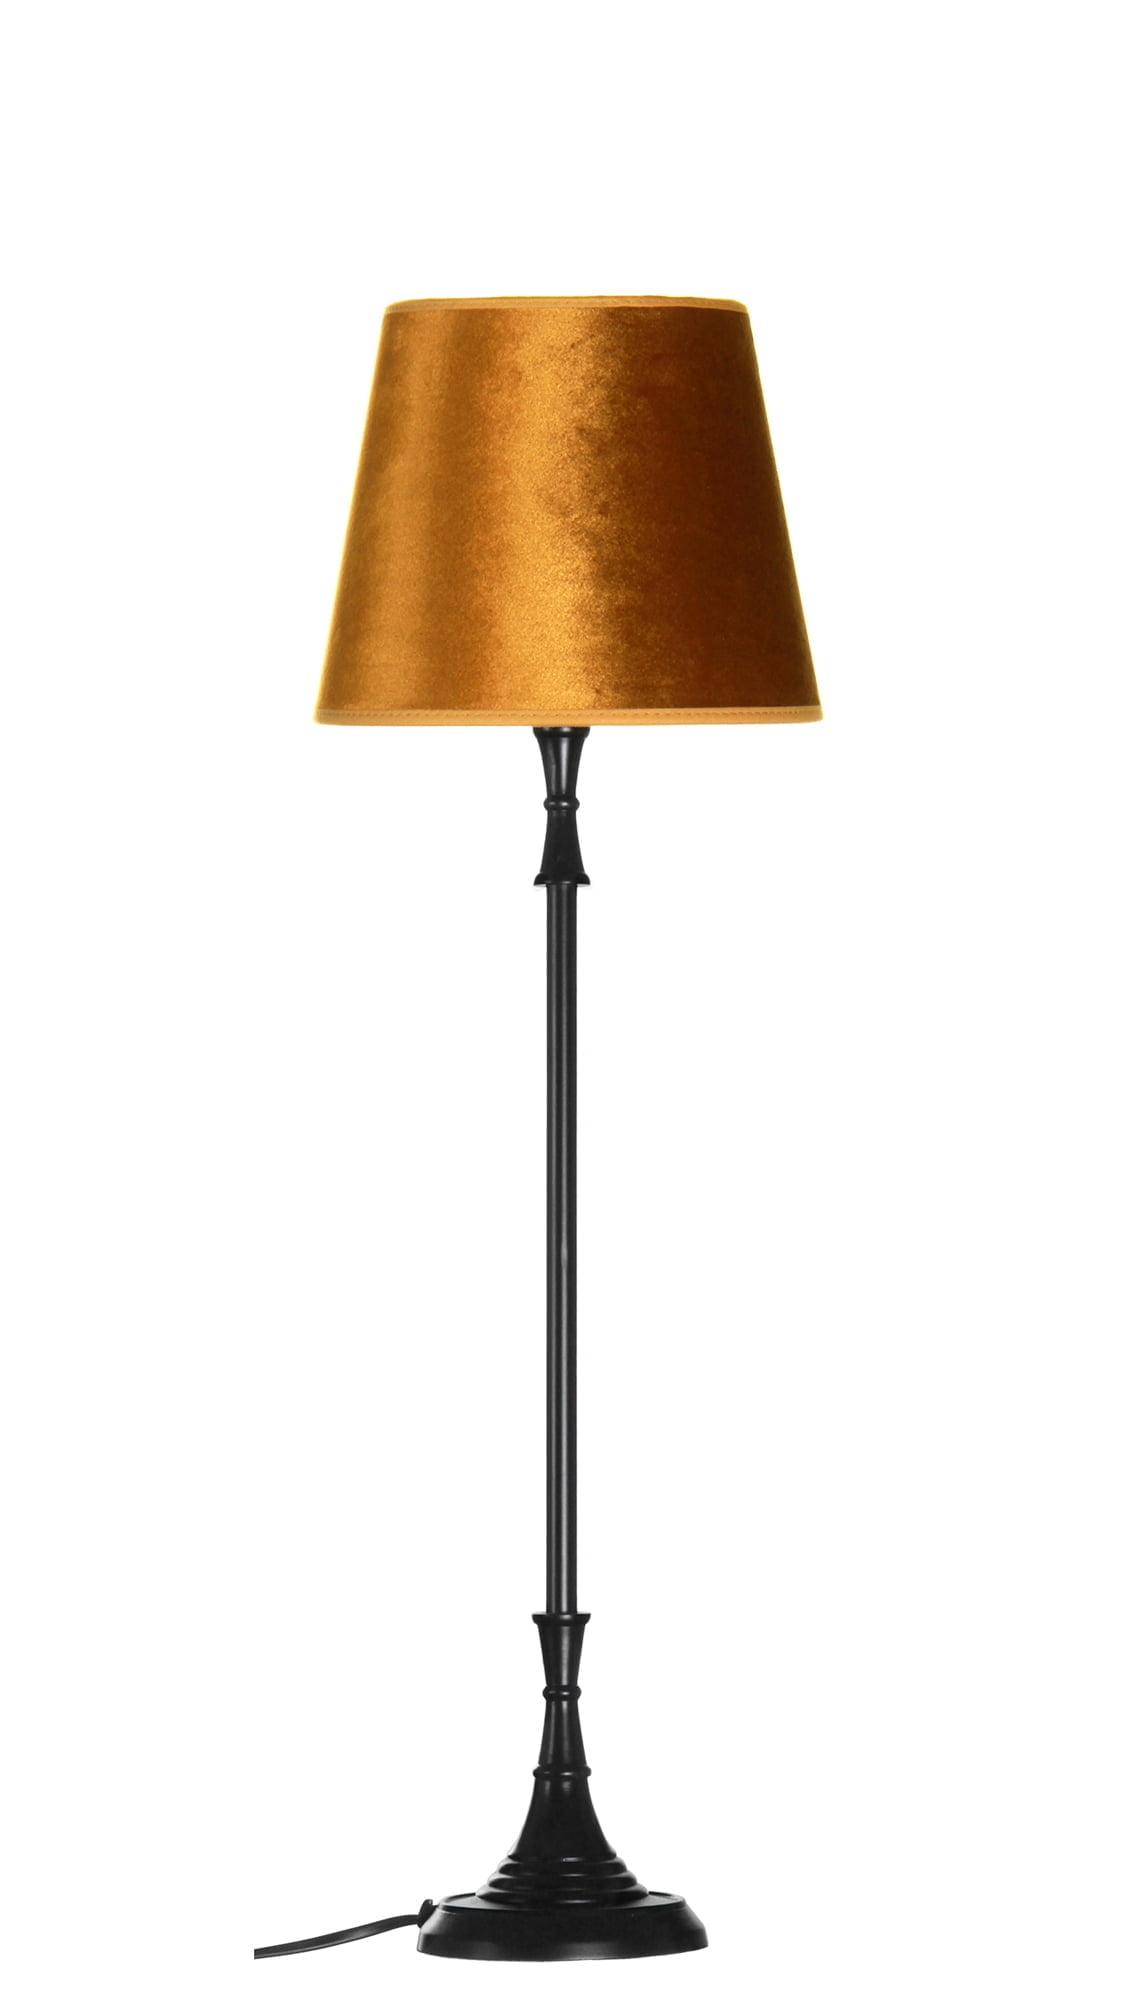 Metallinen lampunjalka jonka väri on musta. Varjostimen väri on kulta.